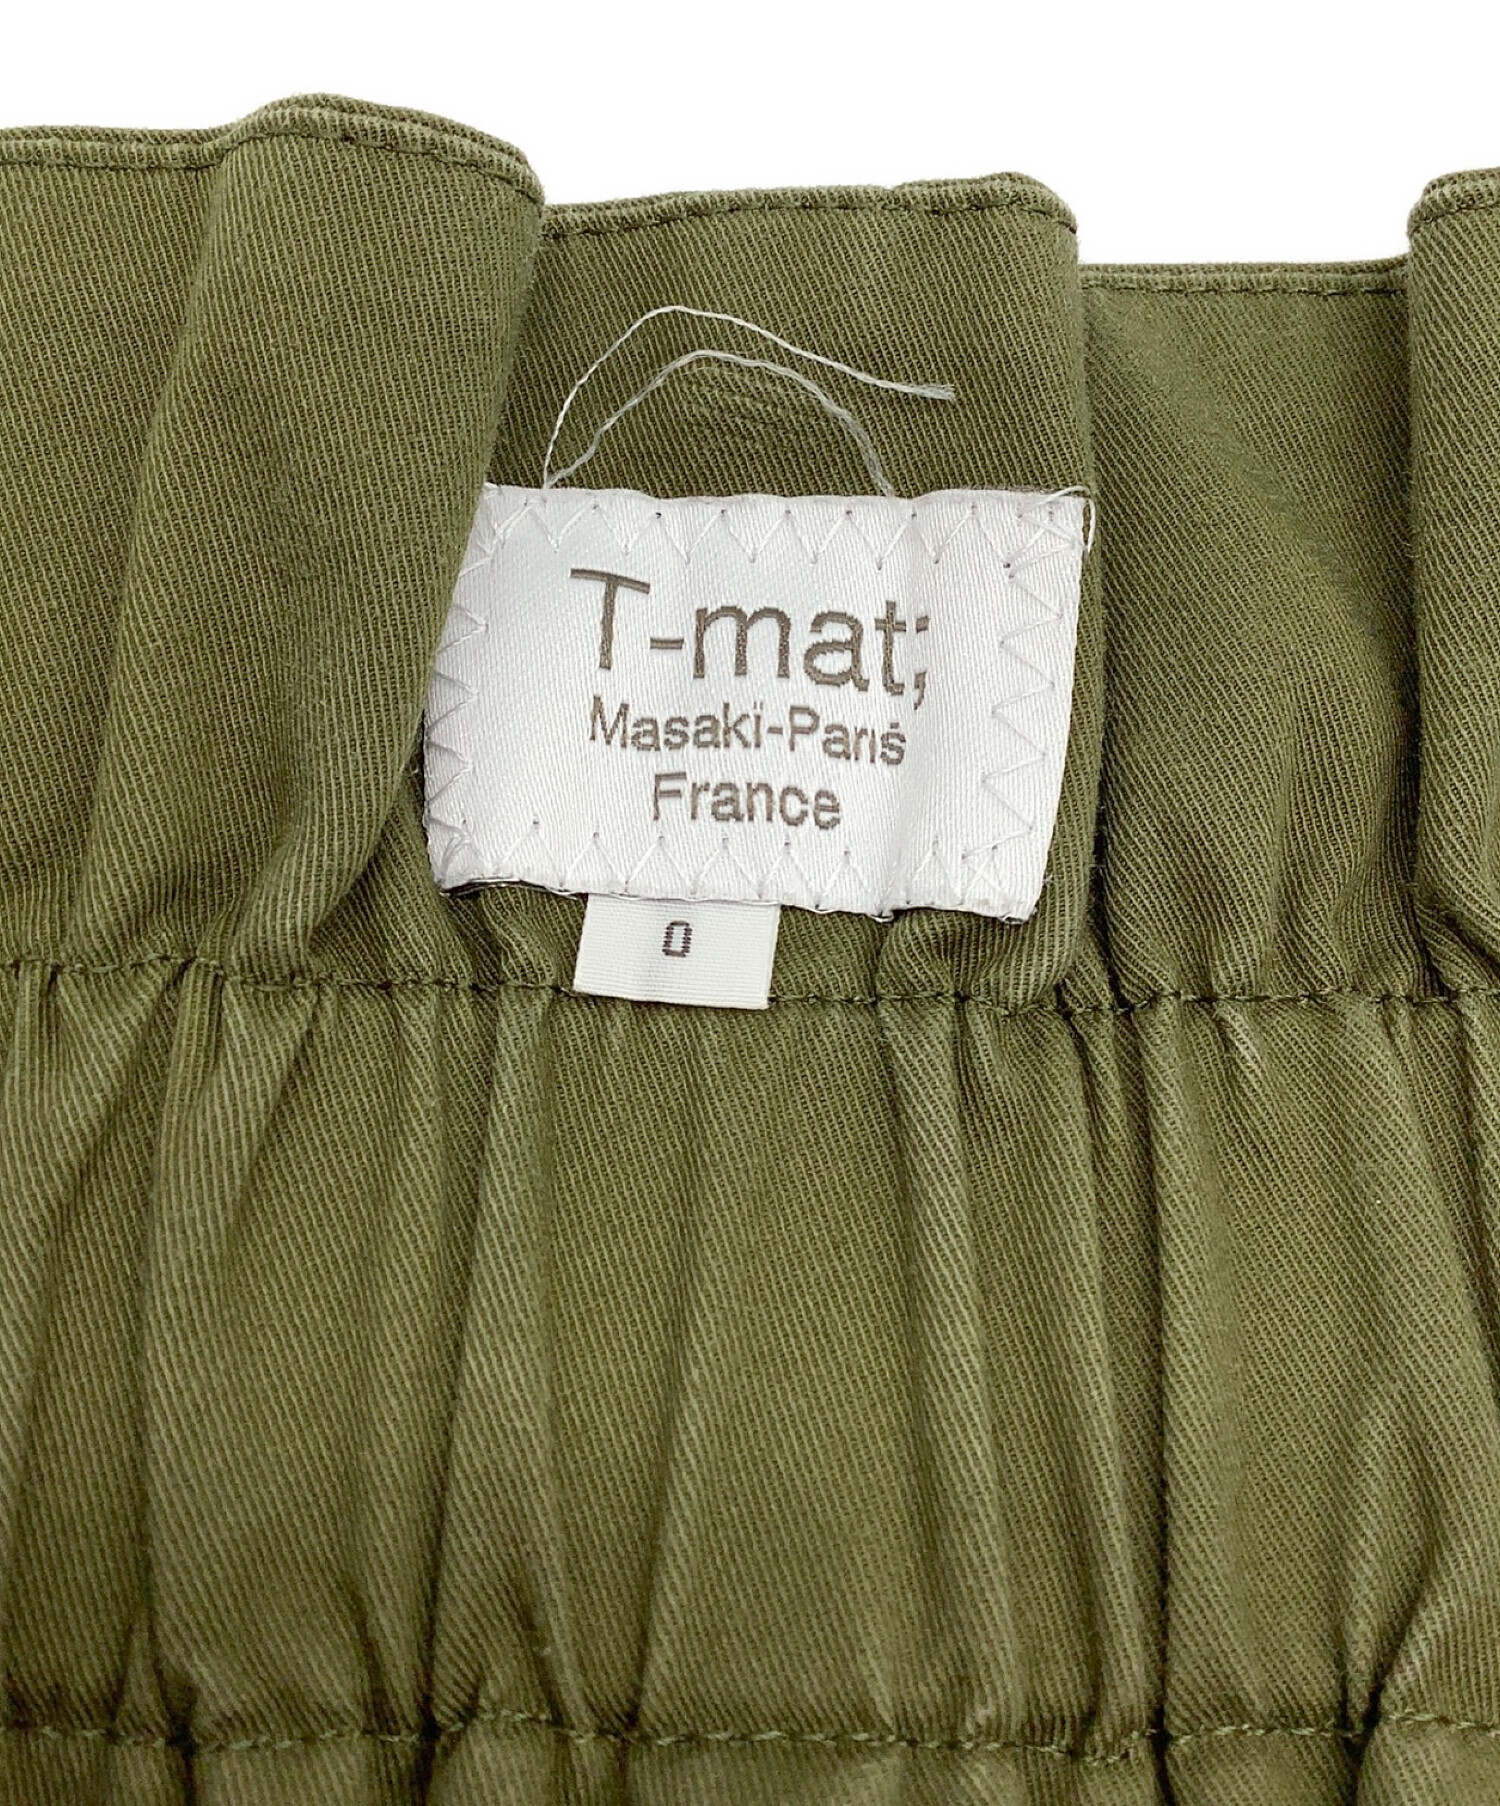 【爆買い豊富な】T-mat Masaki-ParisｘDrawer カモフラージュパンツ0 パンツ